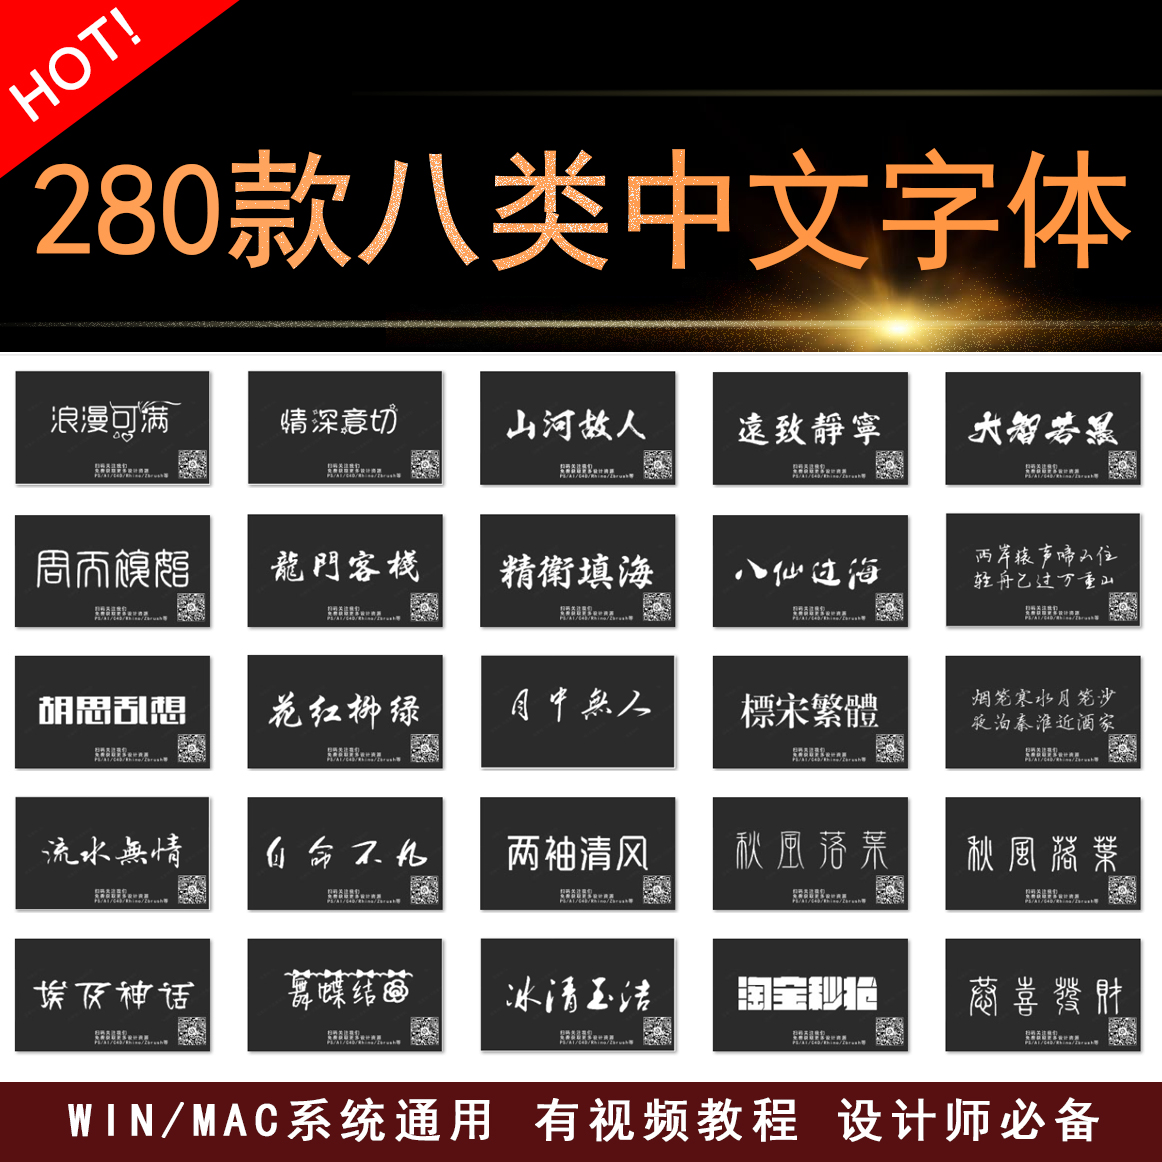 280款八大类中文字体库素材美工设计广告设计平面设计附送教程